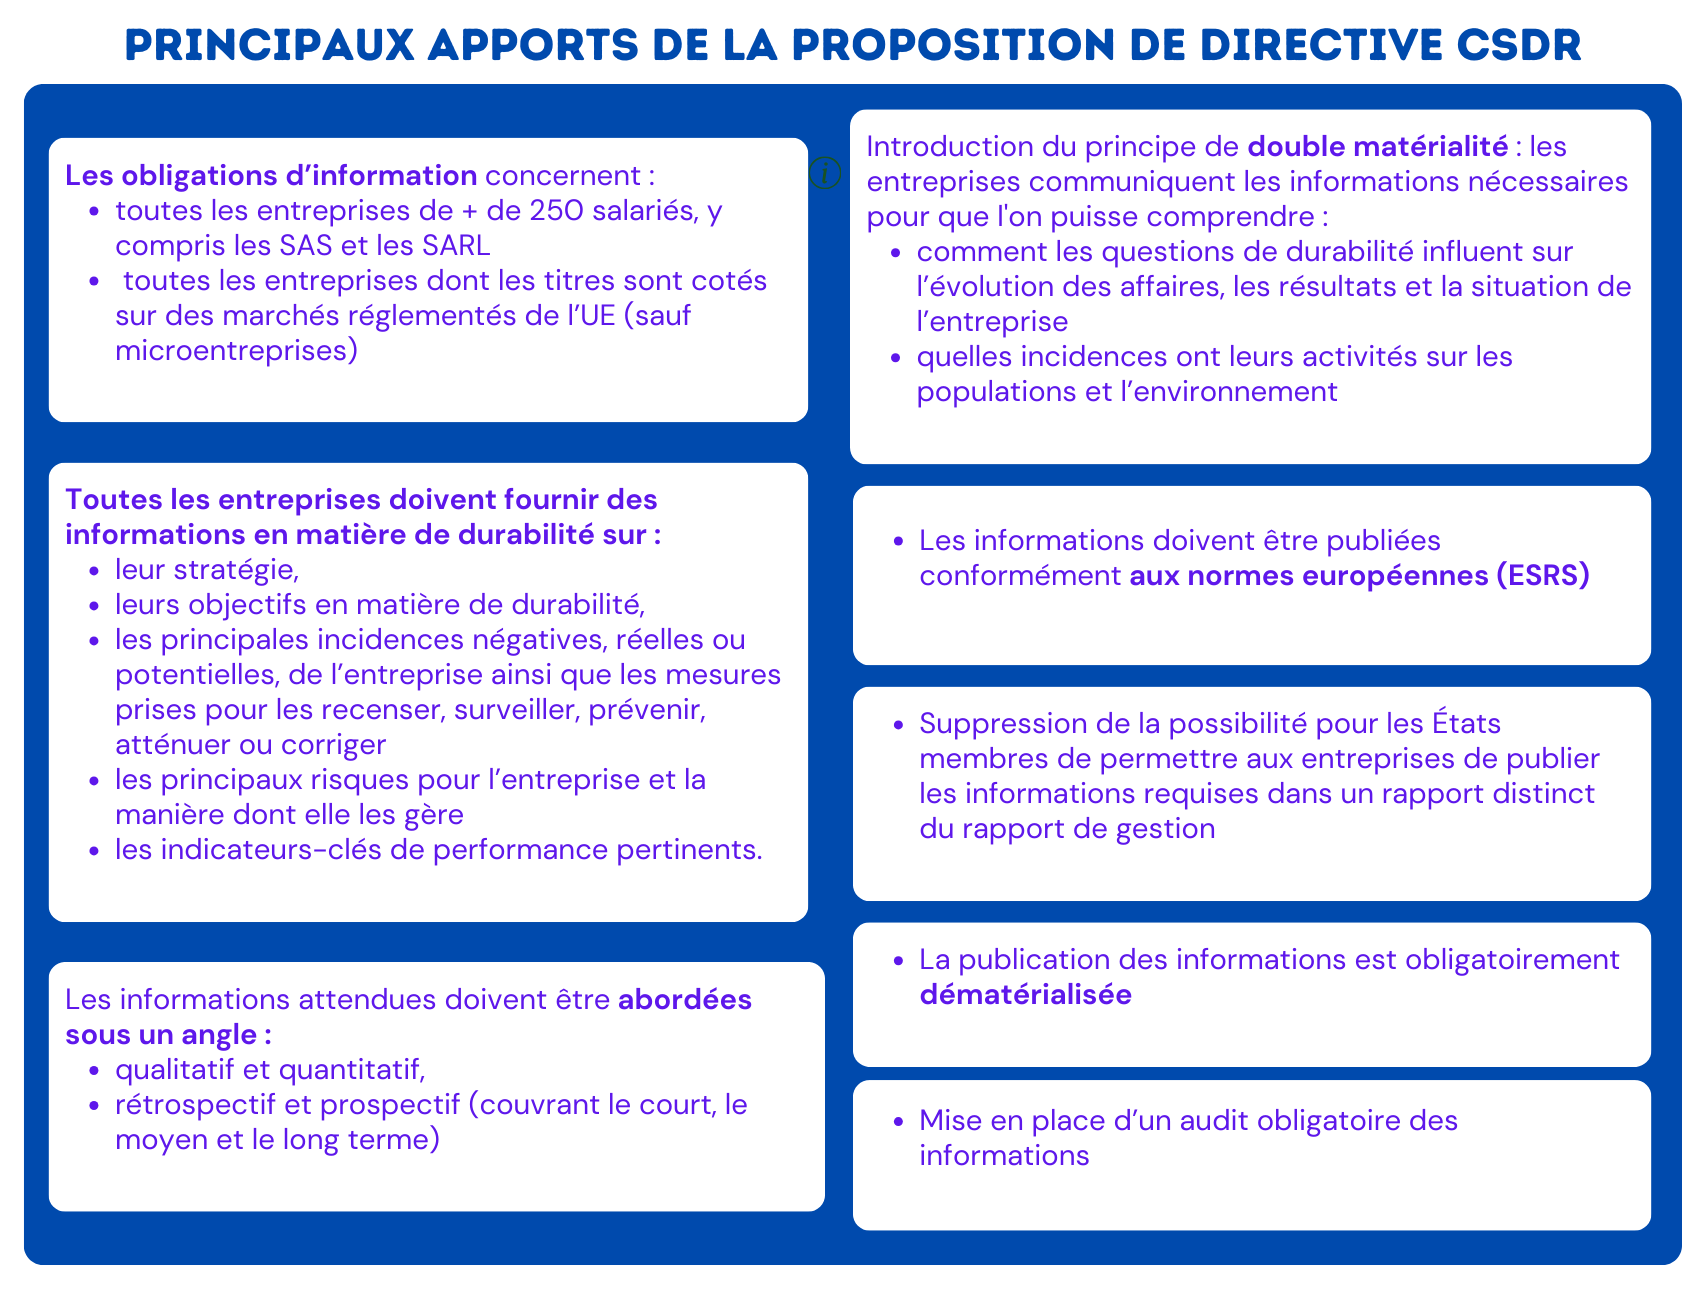 Principaux apports de la proposition de directive CSDR